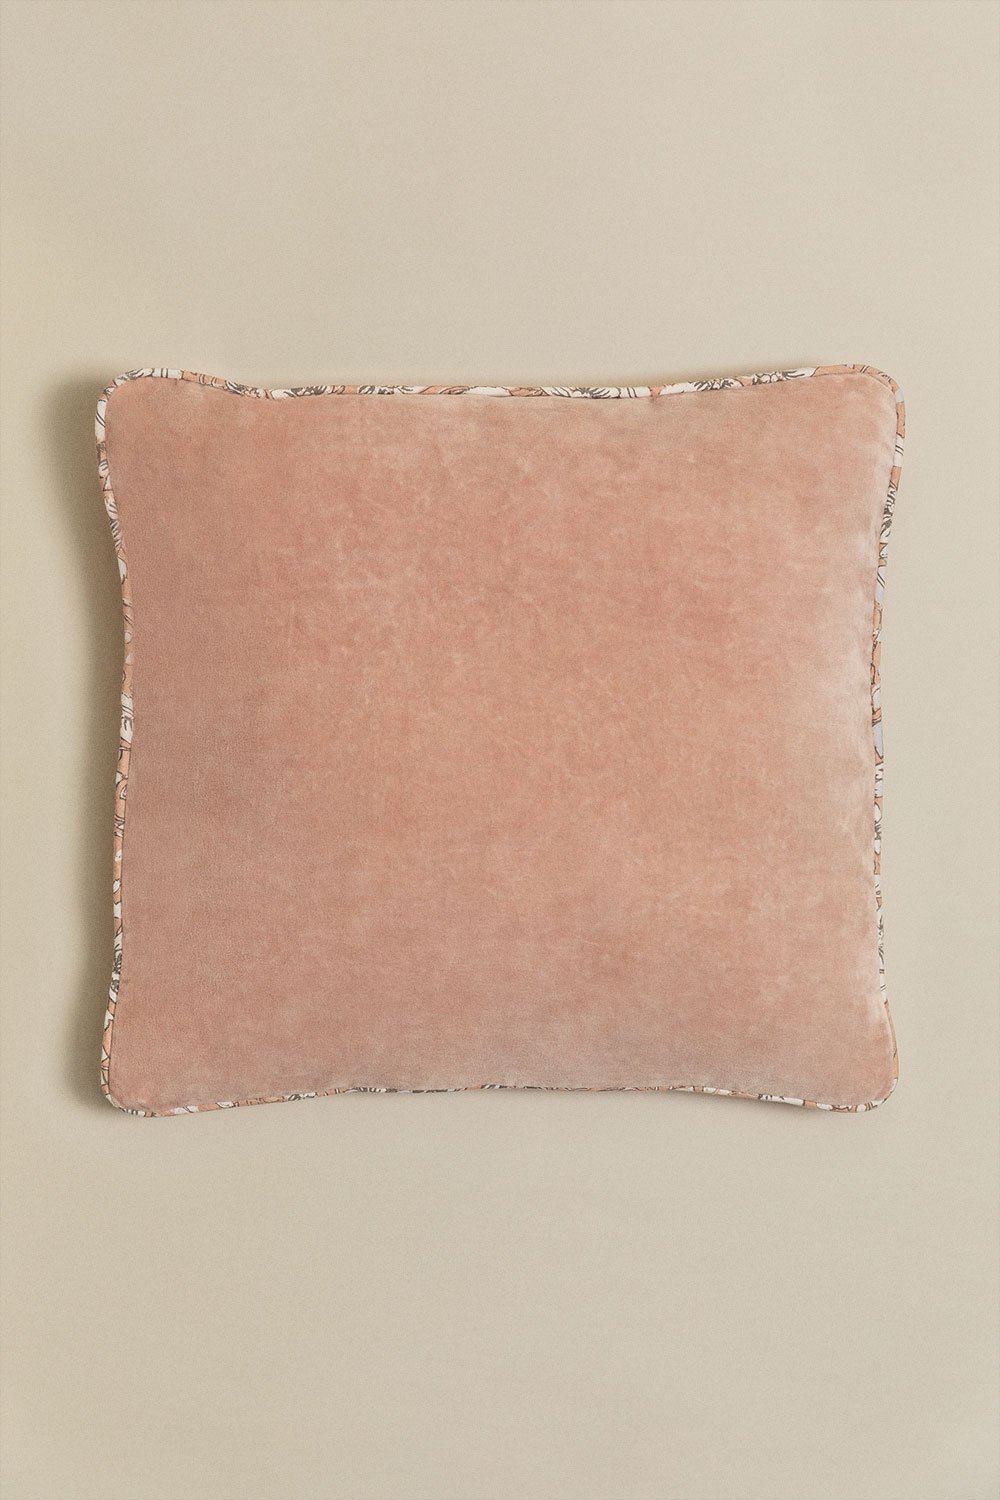 Coussin carré en velours (45x45 cm) Arjona , image de la galerie 1